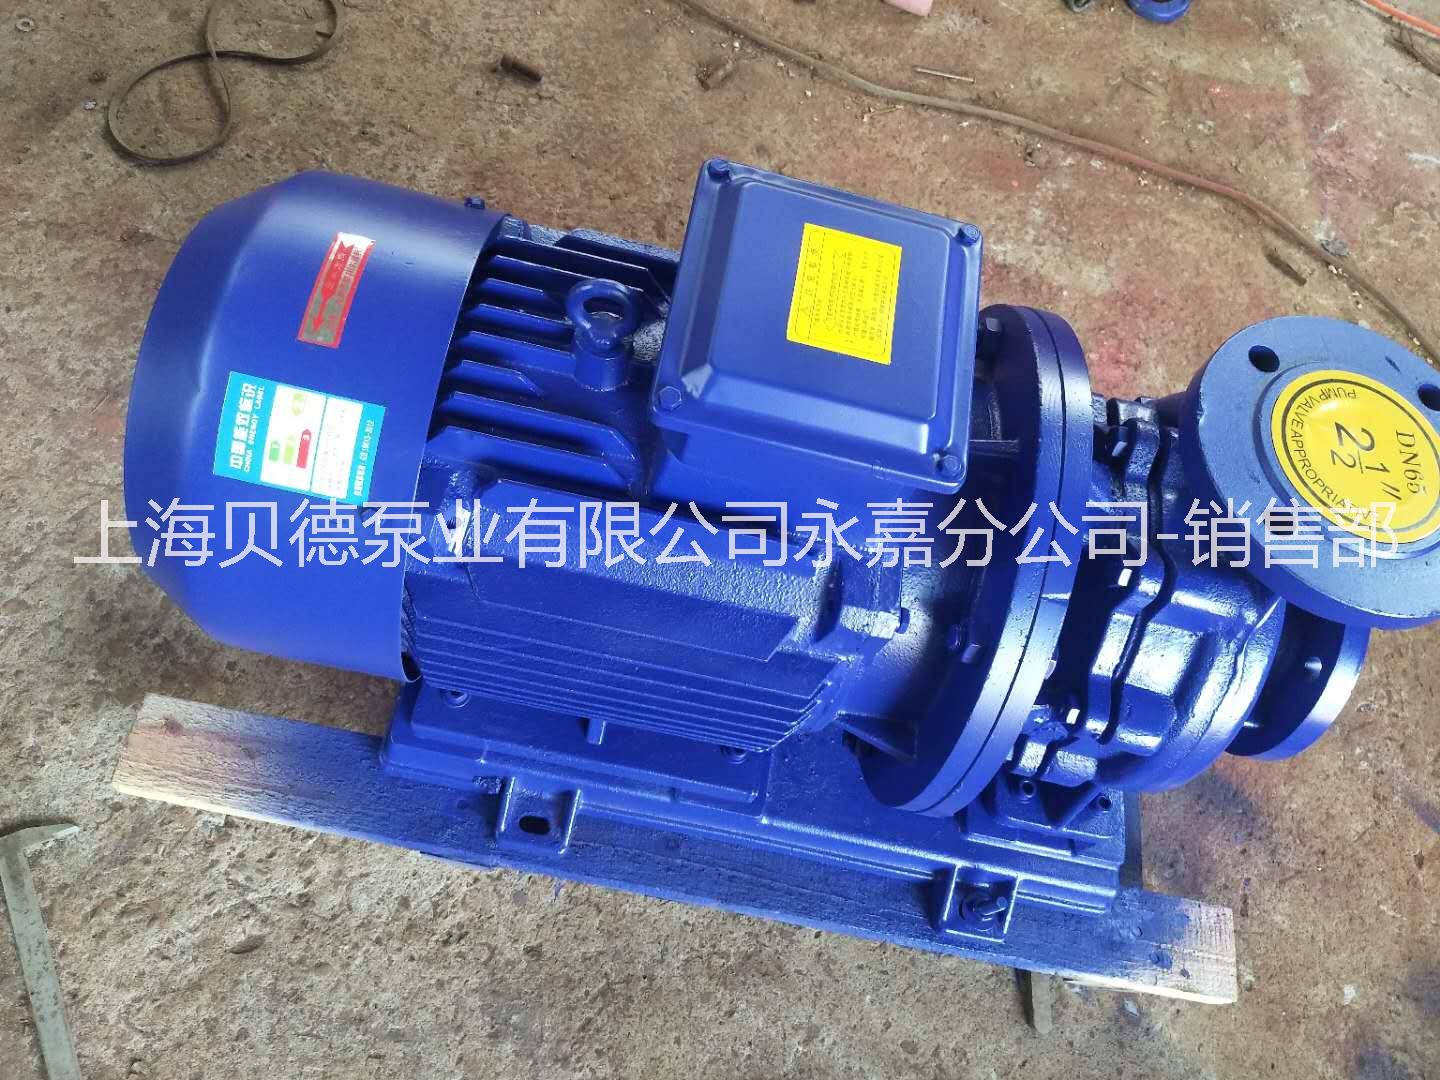 上海贝德泵业有限公司德州办事处ISG100-160  管道循环泵，自动单级单吸管道泵   IRG热水管道泵